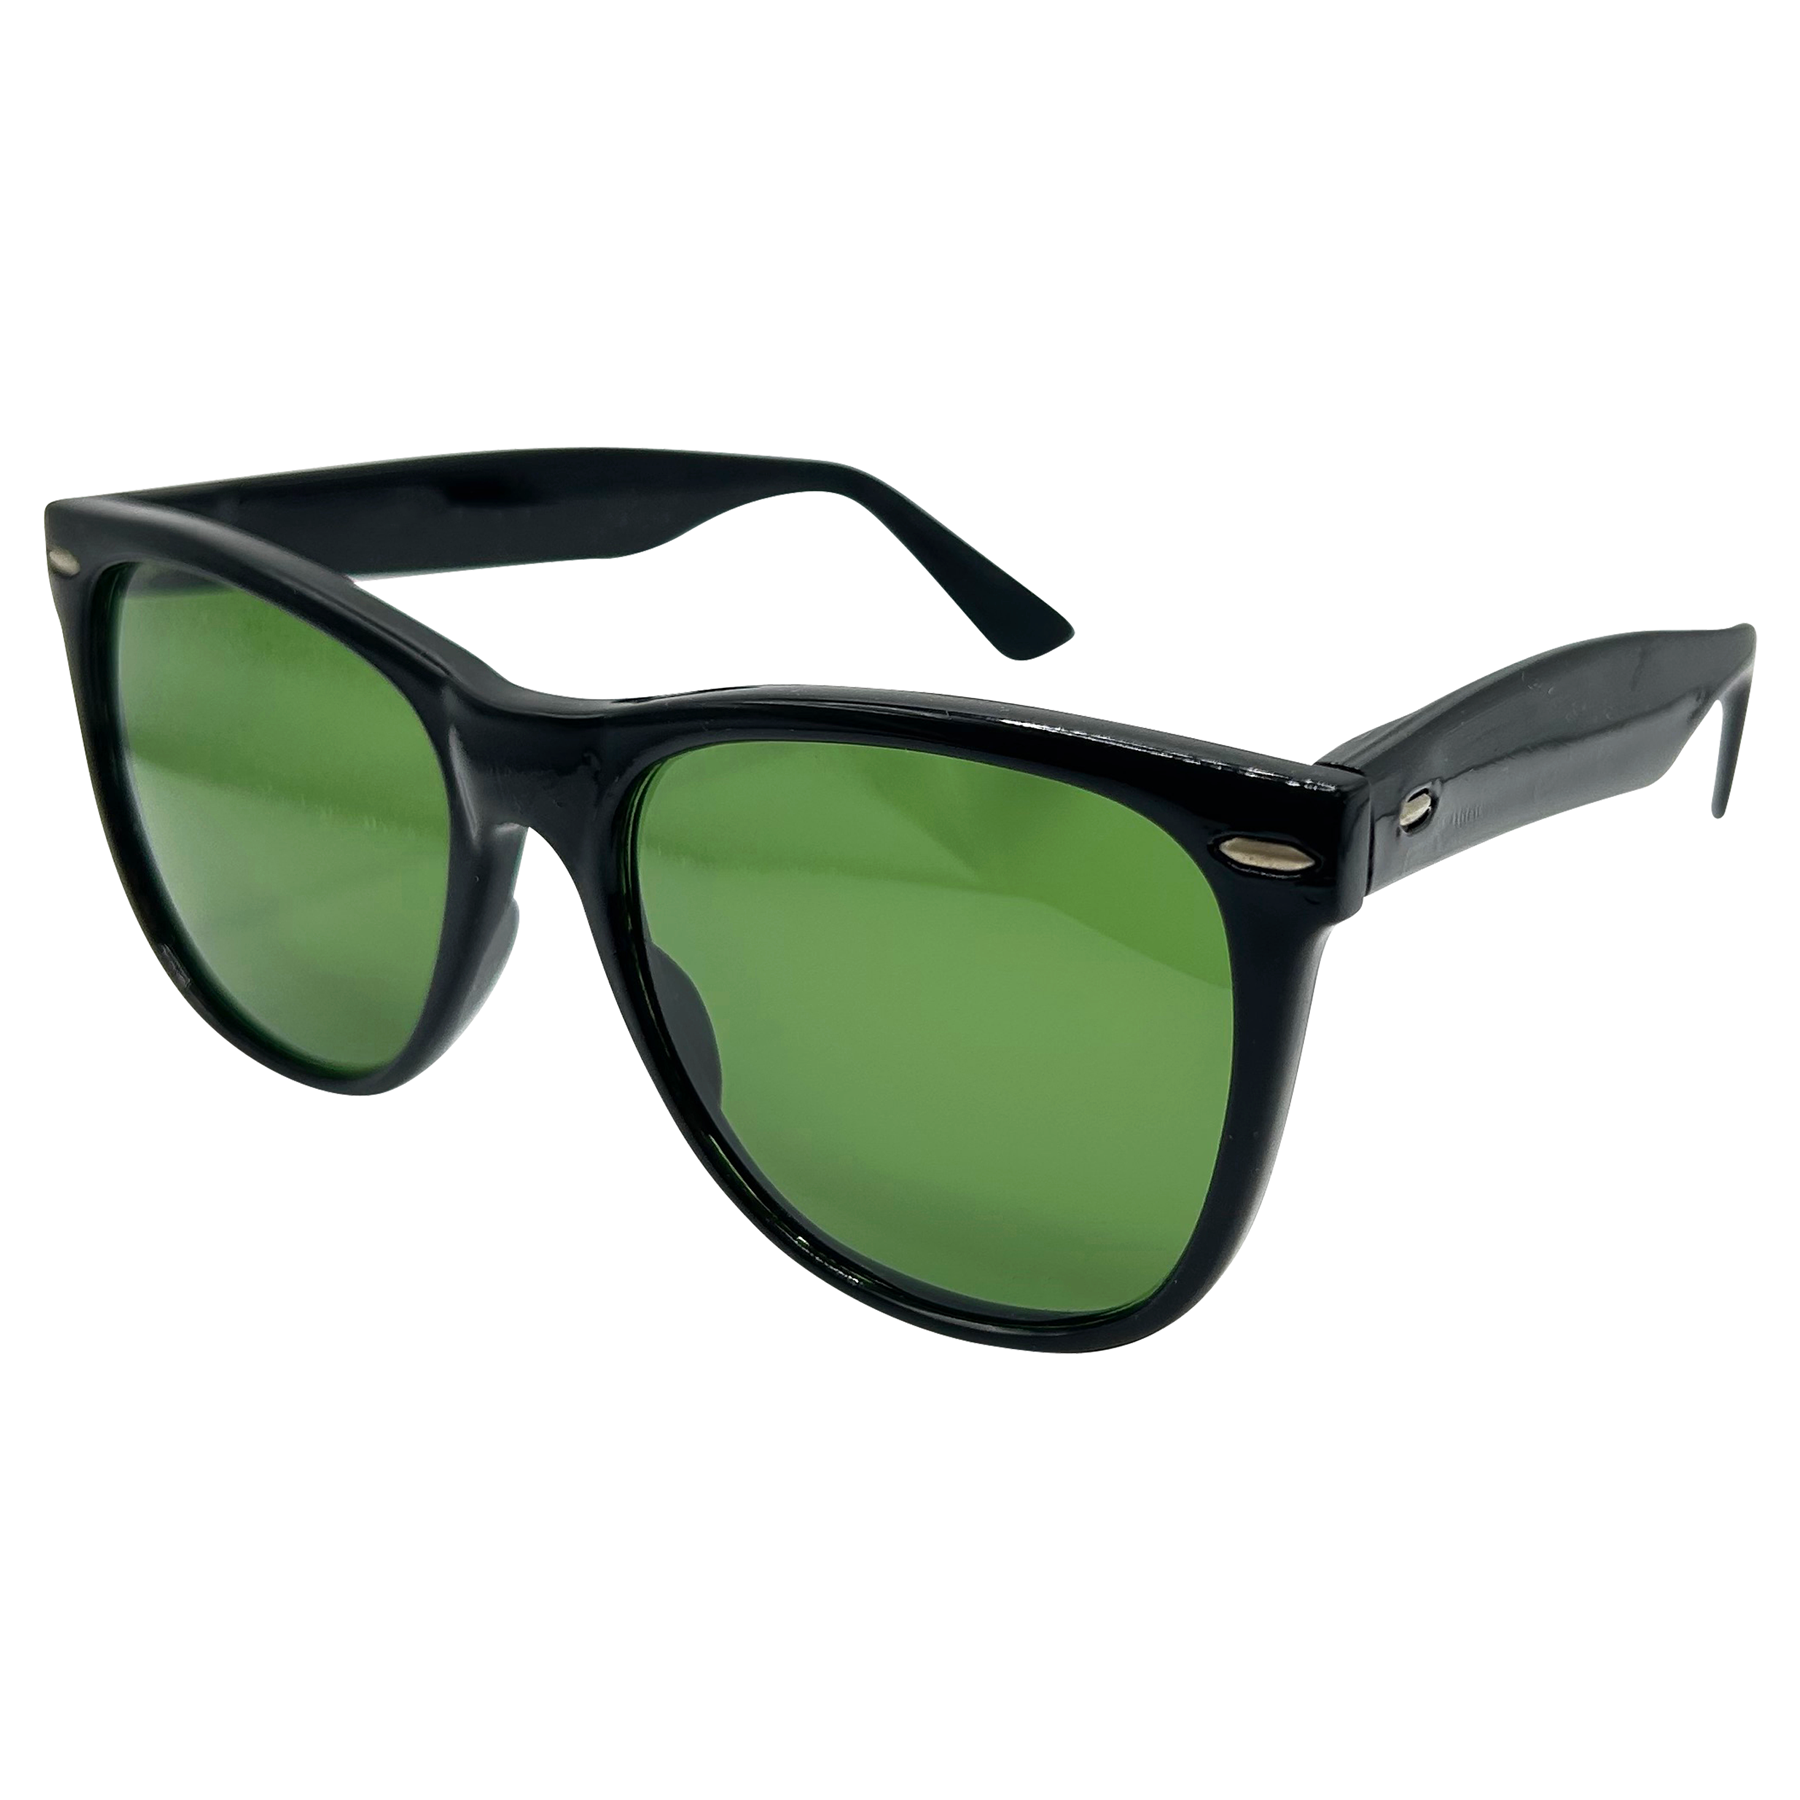 Classic Retro Wayfarer Sunglasses - Black